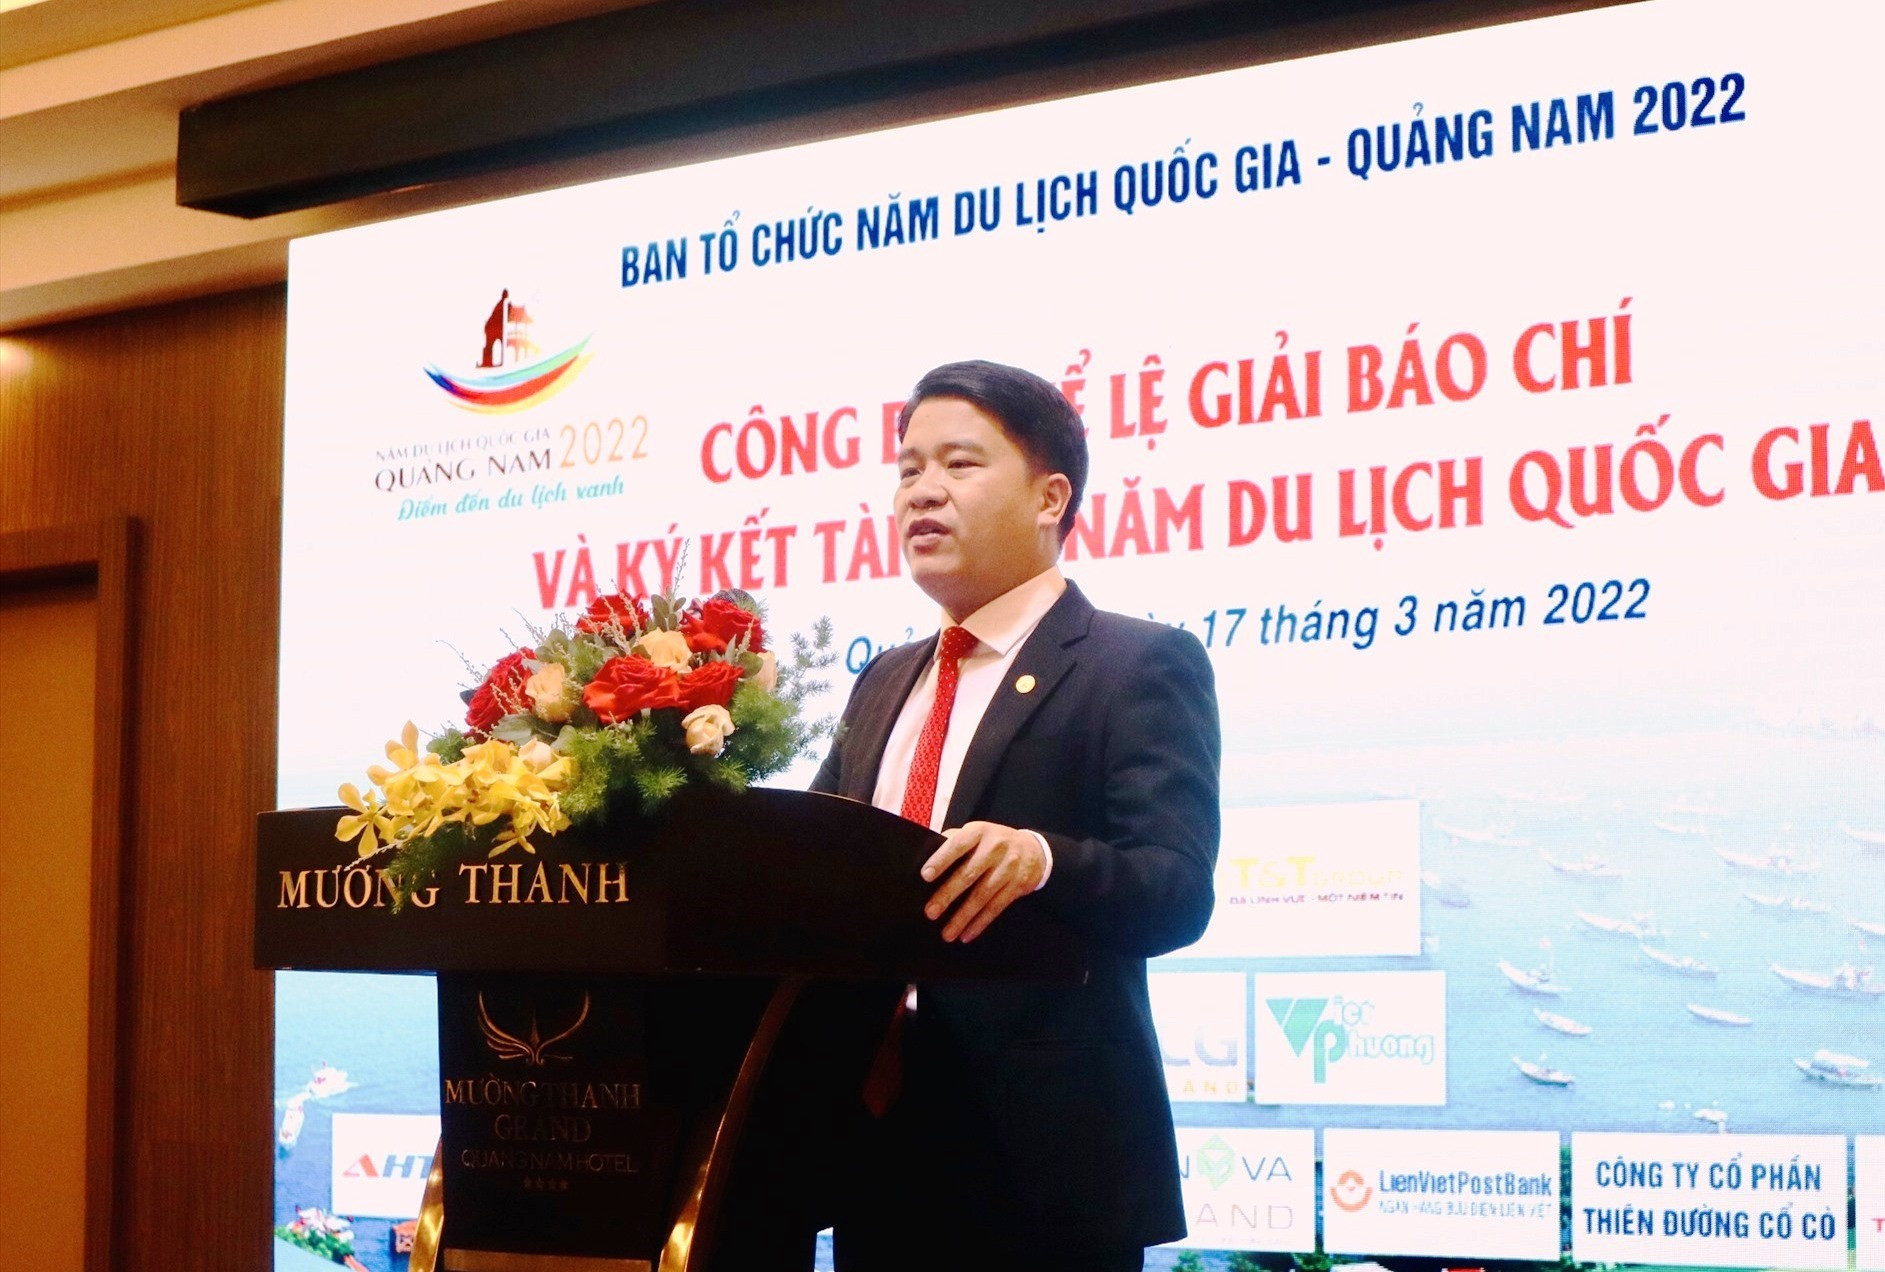 Phó Chủ tịch UBND tỉnh Trần Văn Tân ghi nhận và cảm ơn sự đồng hành của các đơn vị, doanh nghiệp với Năm du lịch quốc gia - Quảng Nam 2022. Ảnh: Q.T